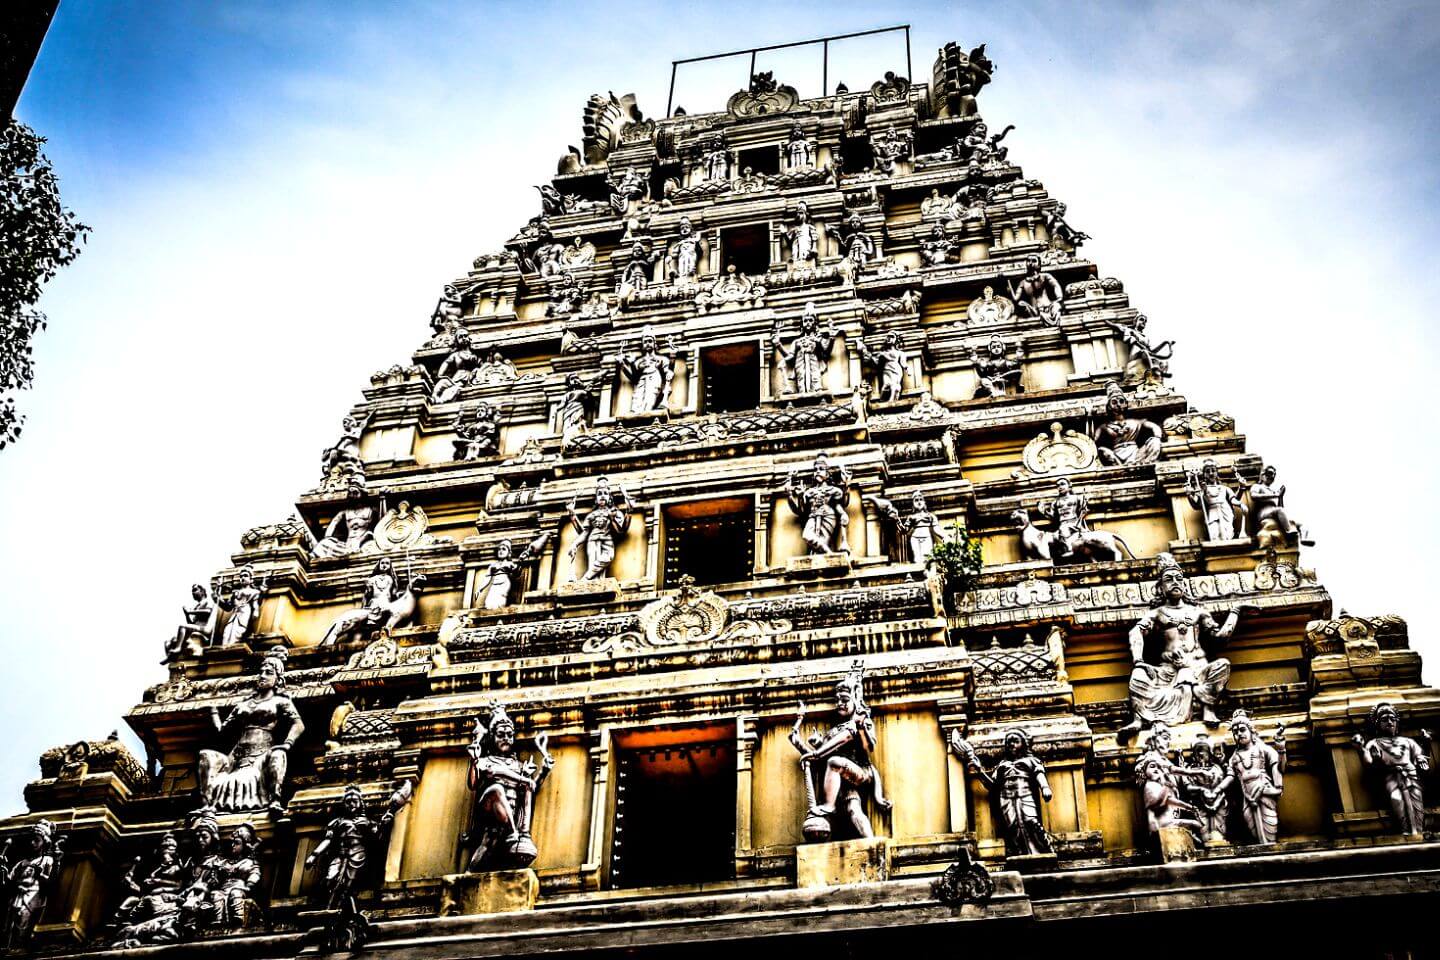 Bull Temple, Bangalore